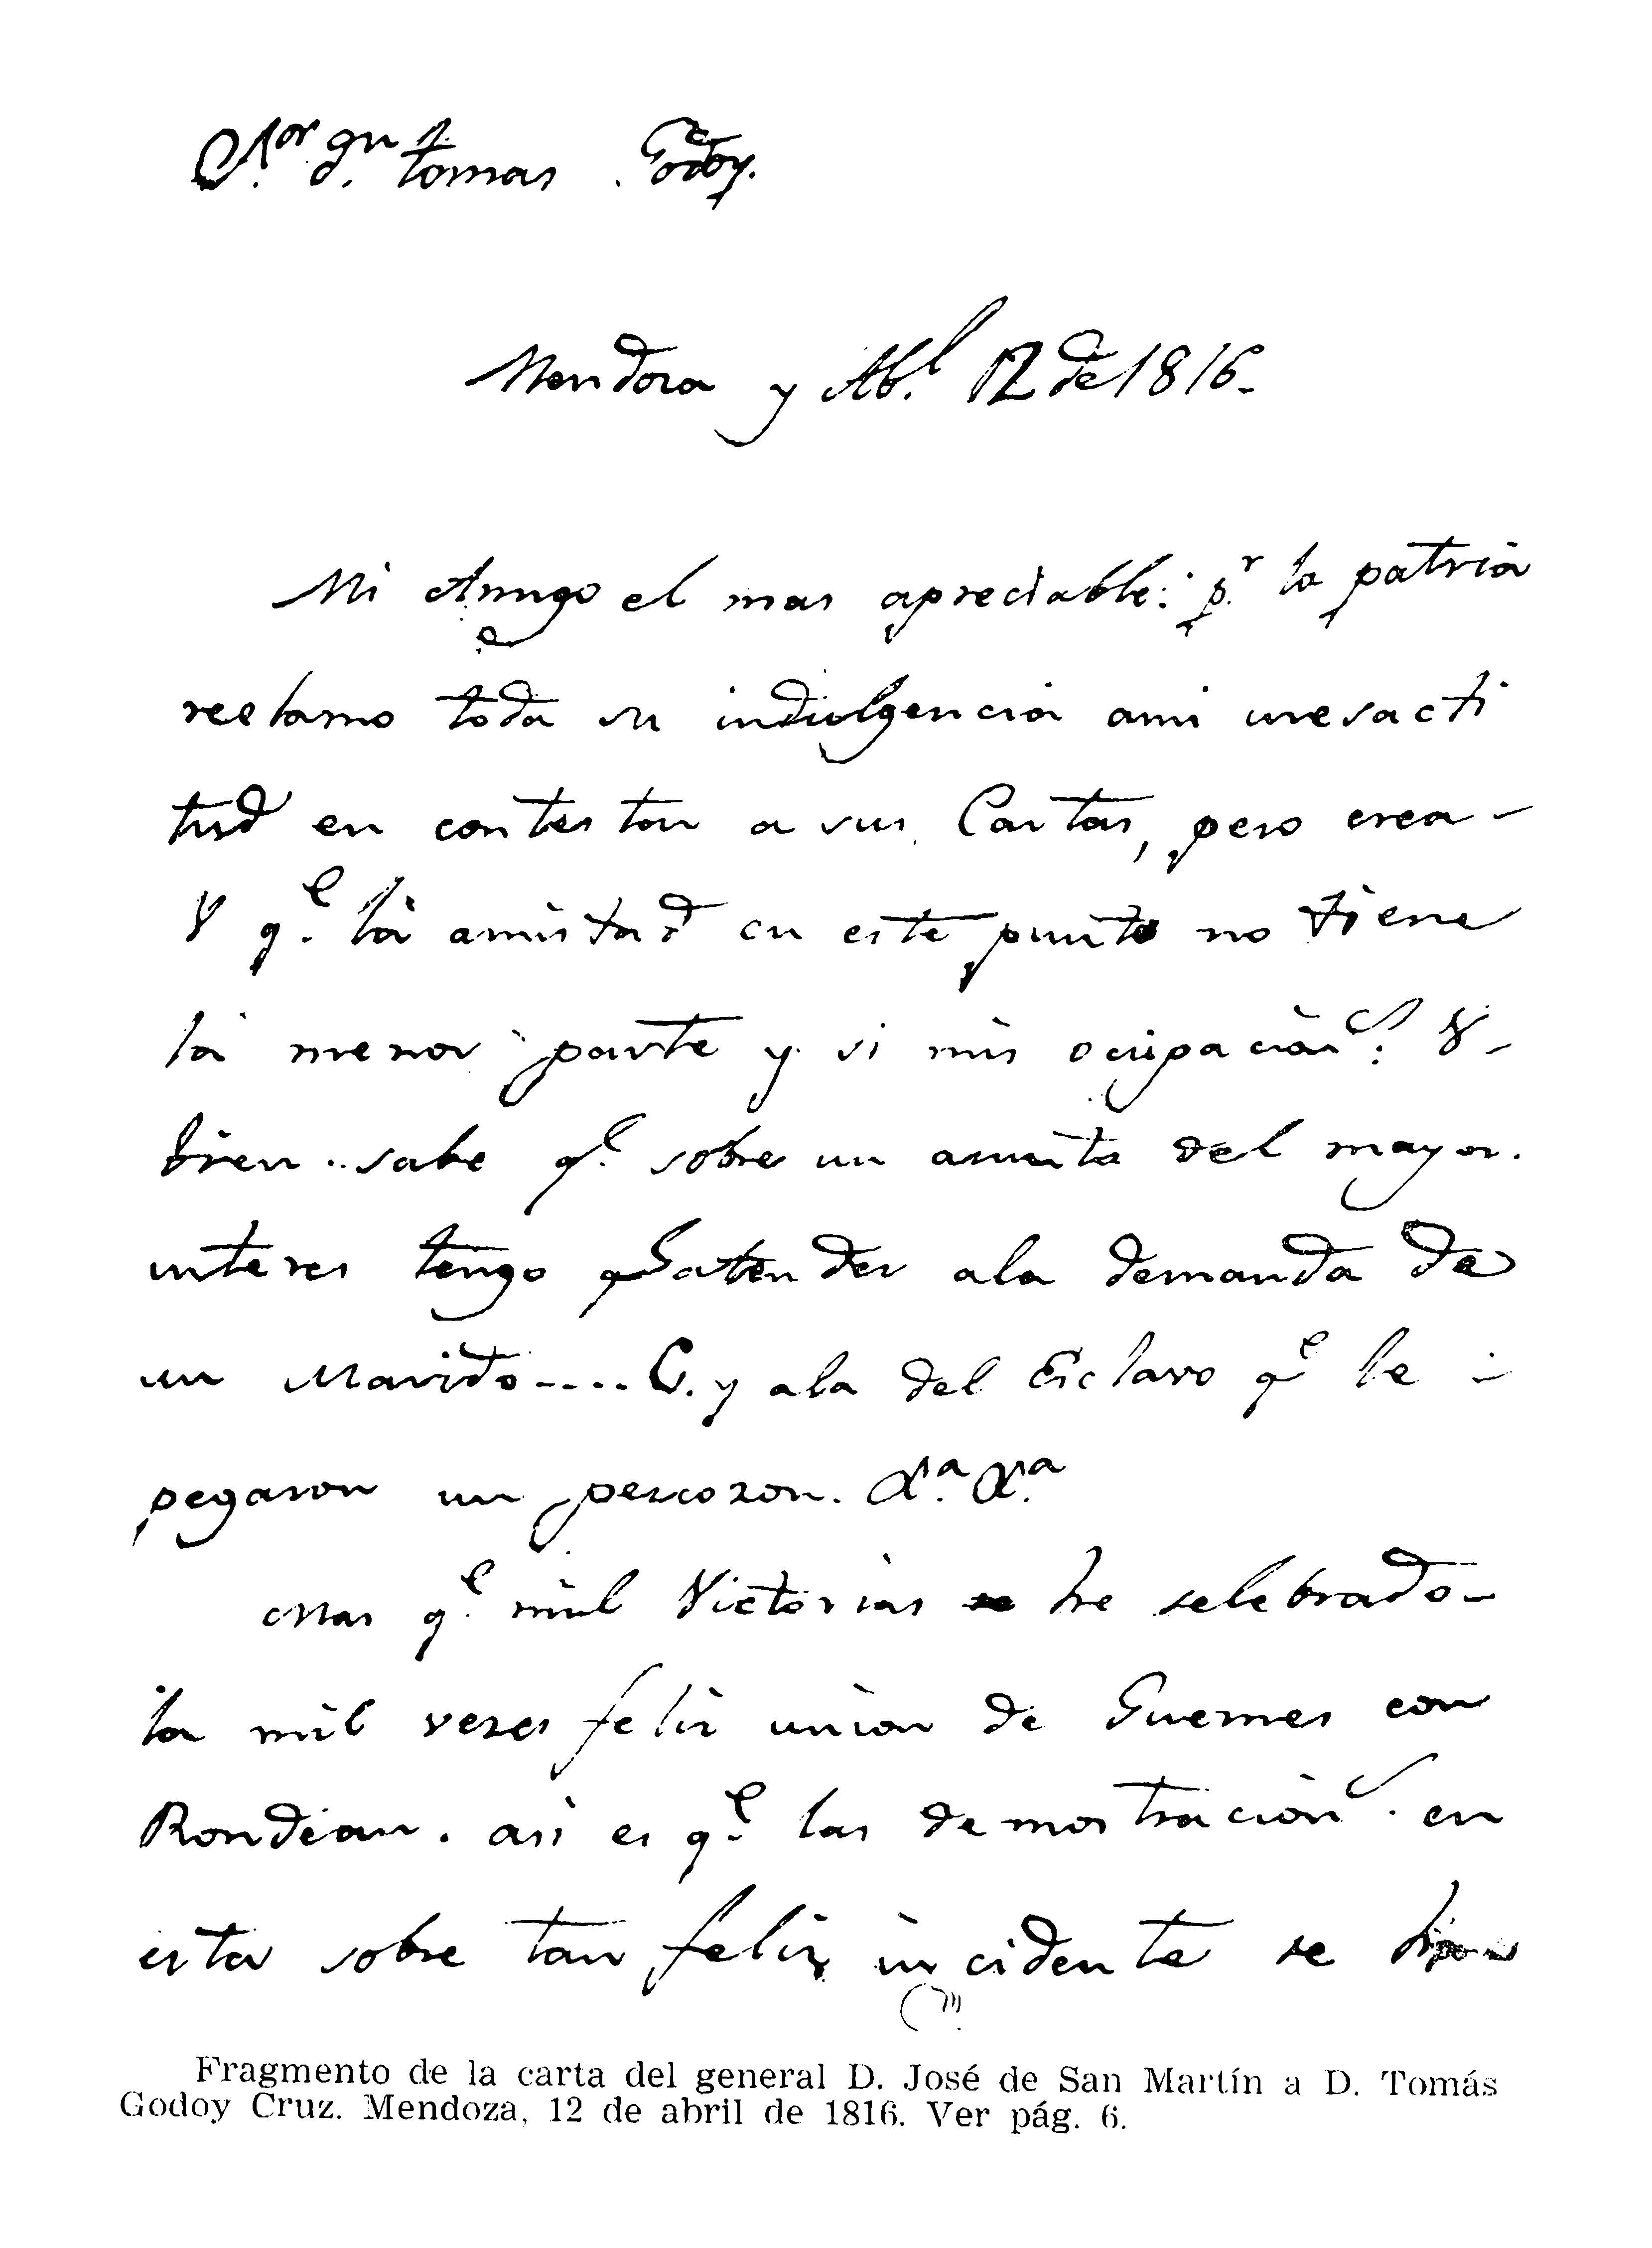 Fragmento de carta del general San Martín a Tomás Godoy Cruz